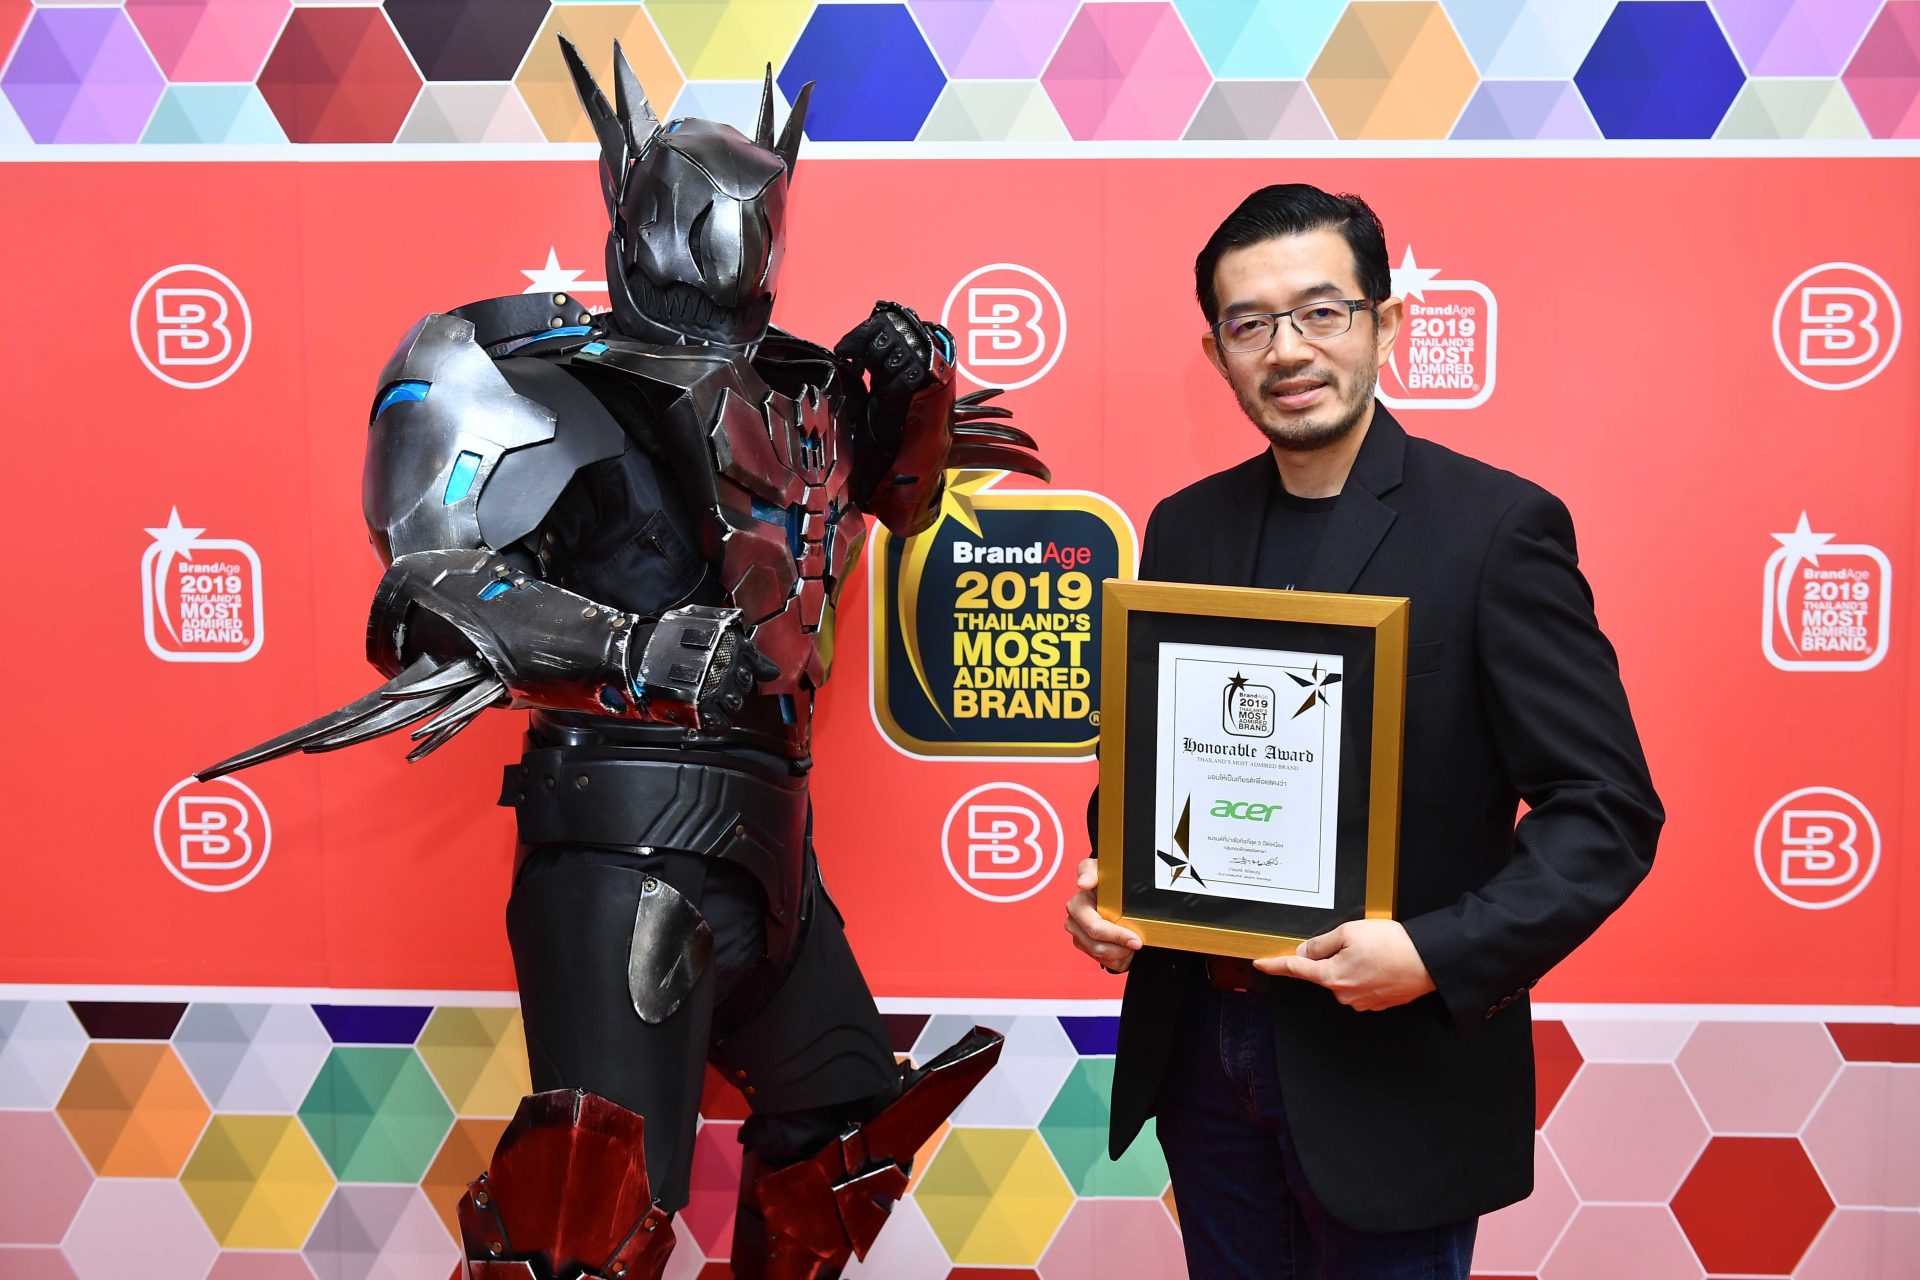 Acer รับรางวัล Thailand’s Most Admired Brand 2019  สุดยอดแบรนด์ครองใจมหาชนเป็นปีที่ 9